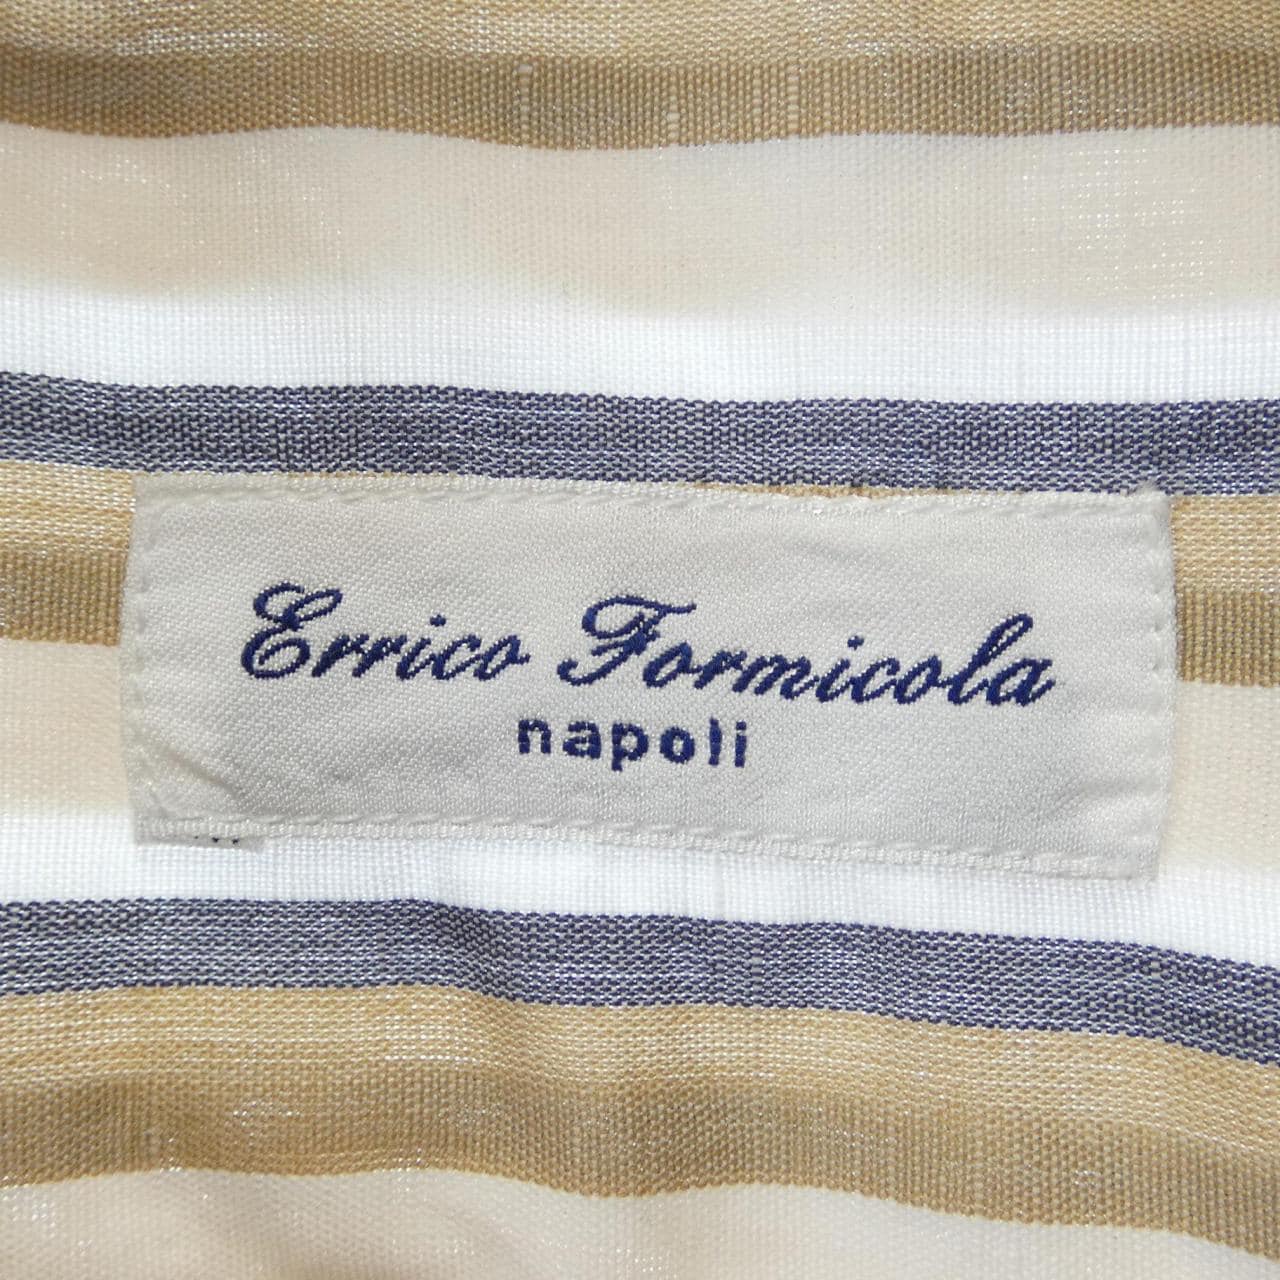 埃里科福尔米科拉ERRICO FORMICOLA衬衫